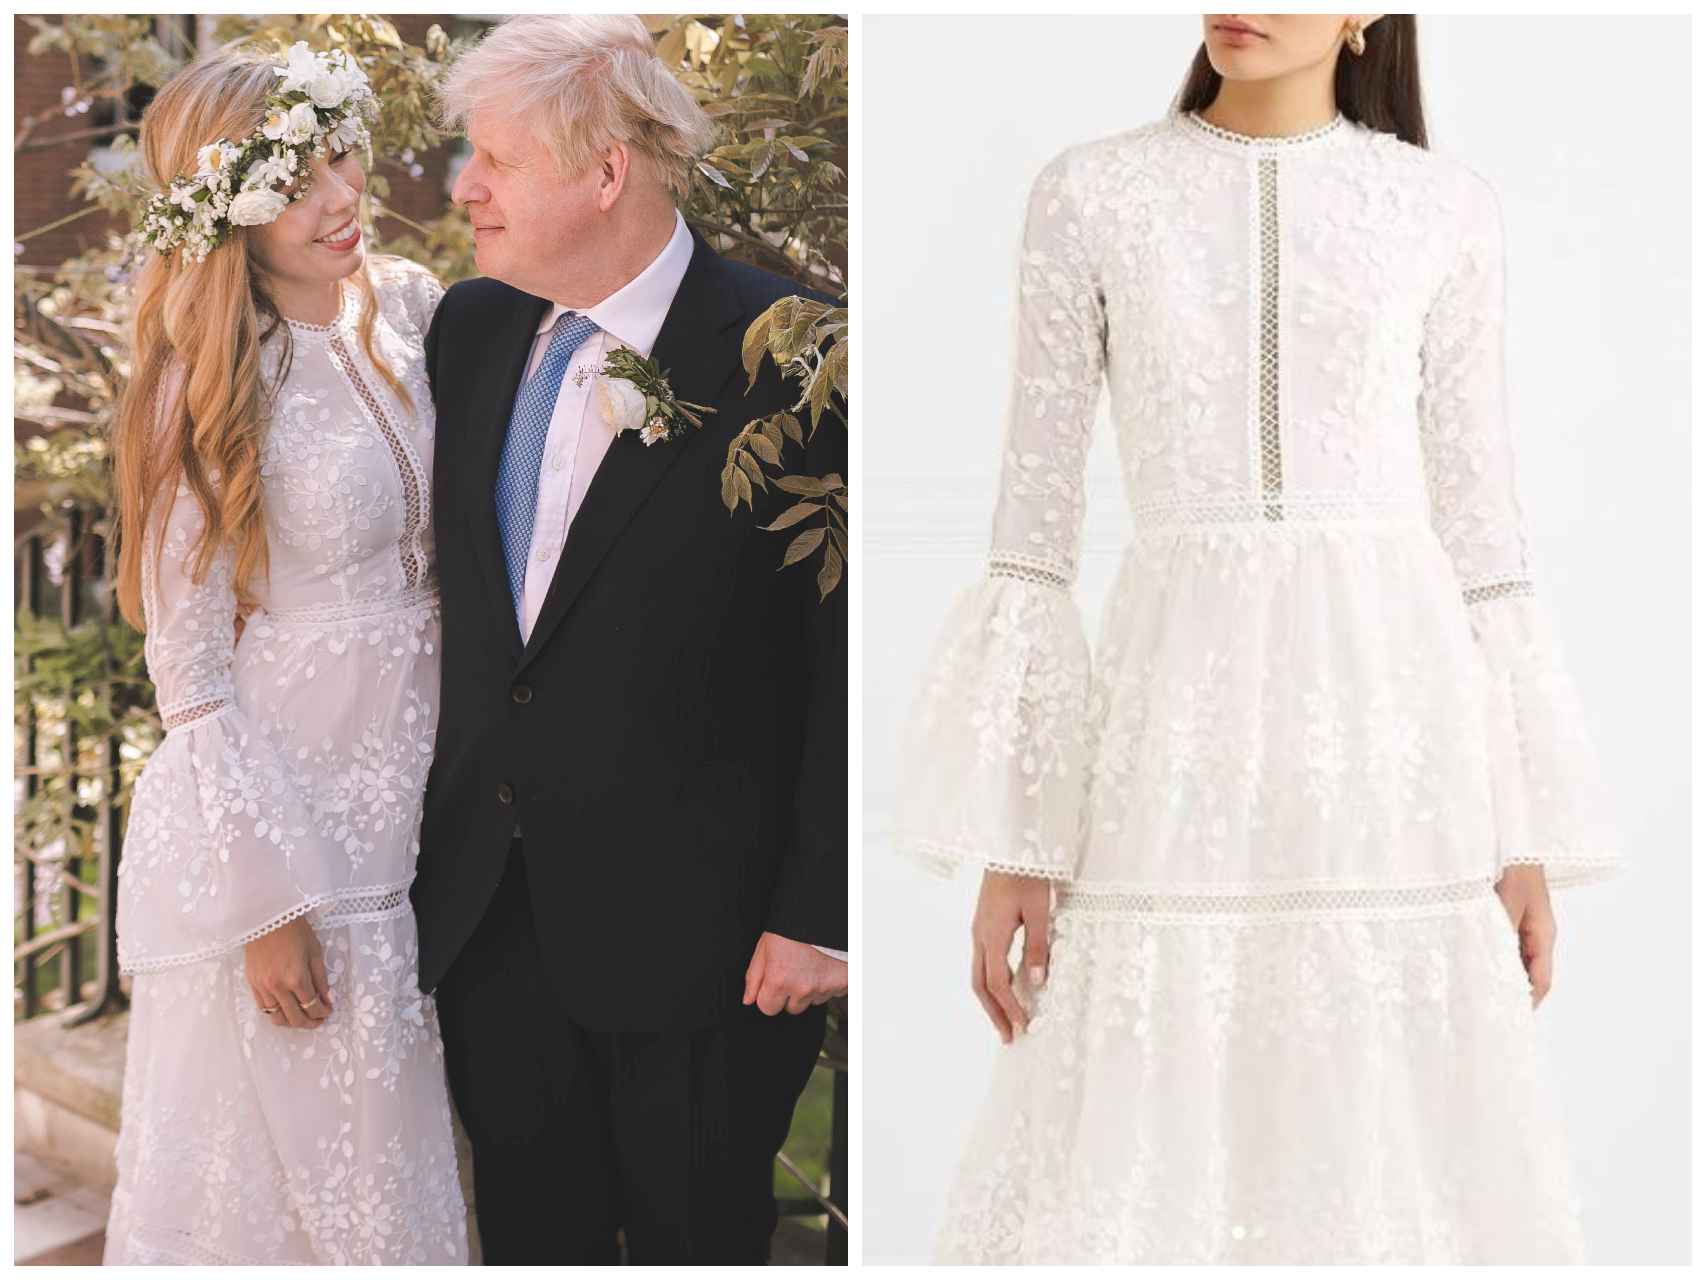 El vestido de novia está firmado por Costarellos Bridal y cuesta más de 3.000 euros.